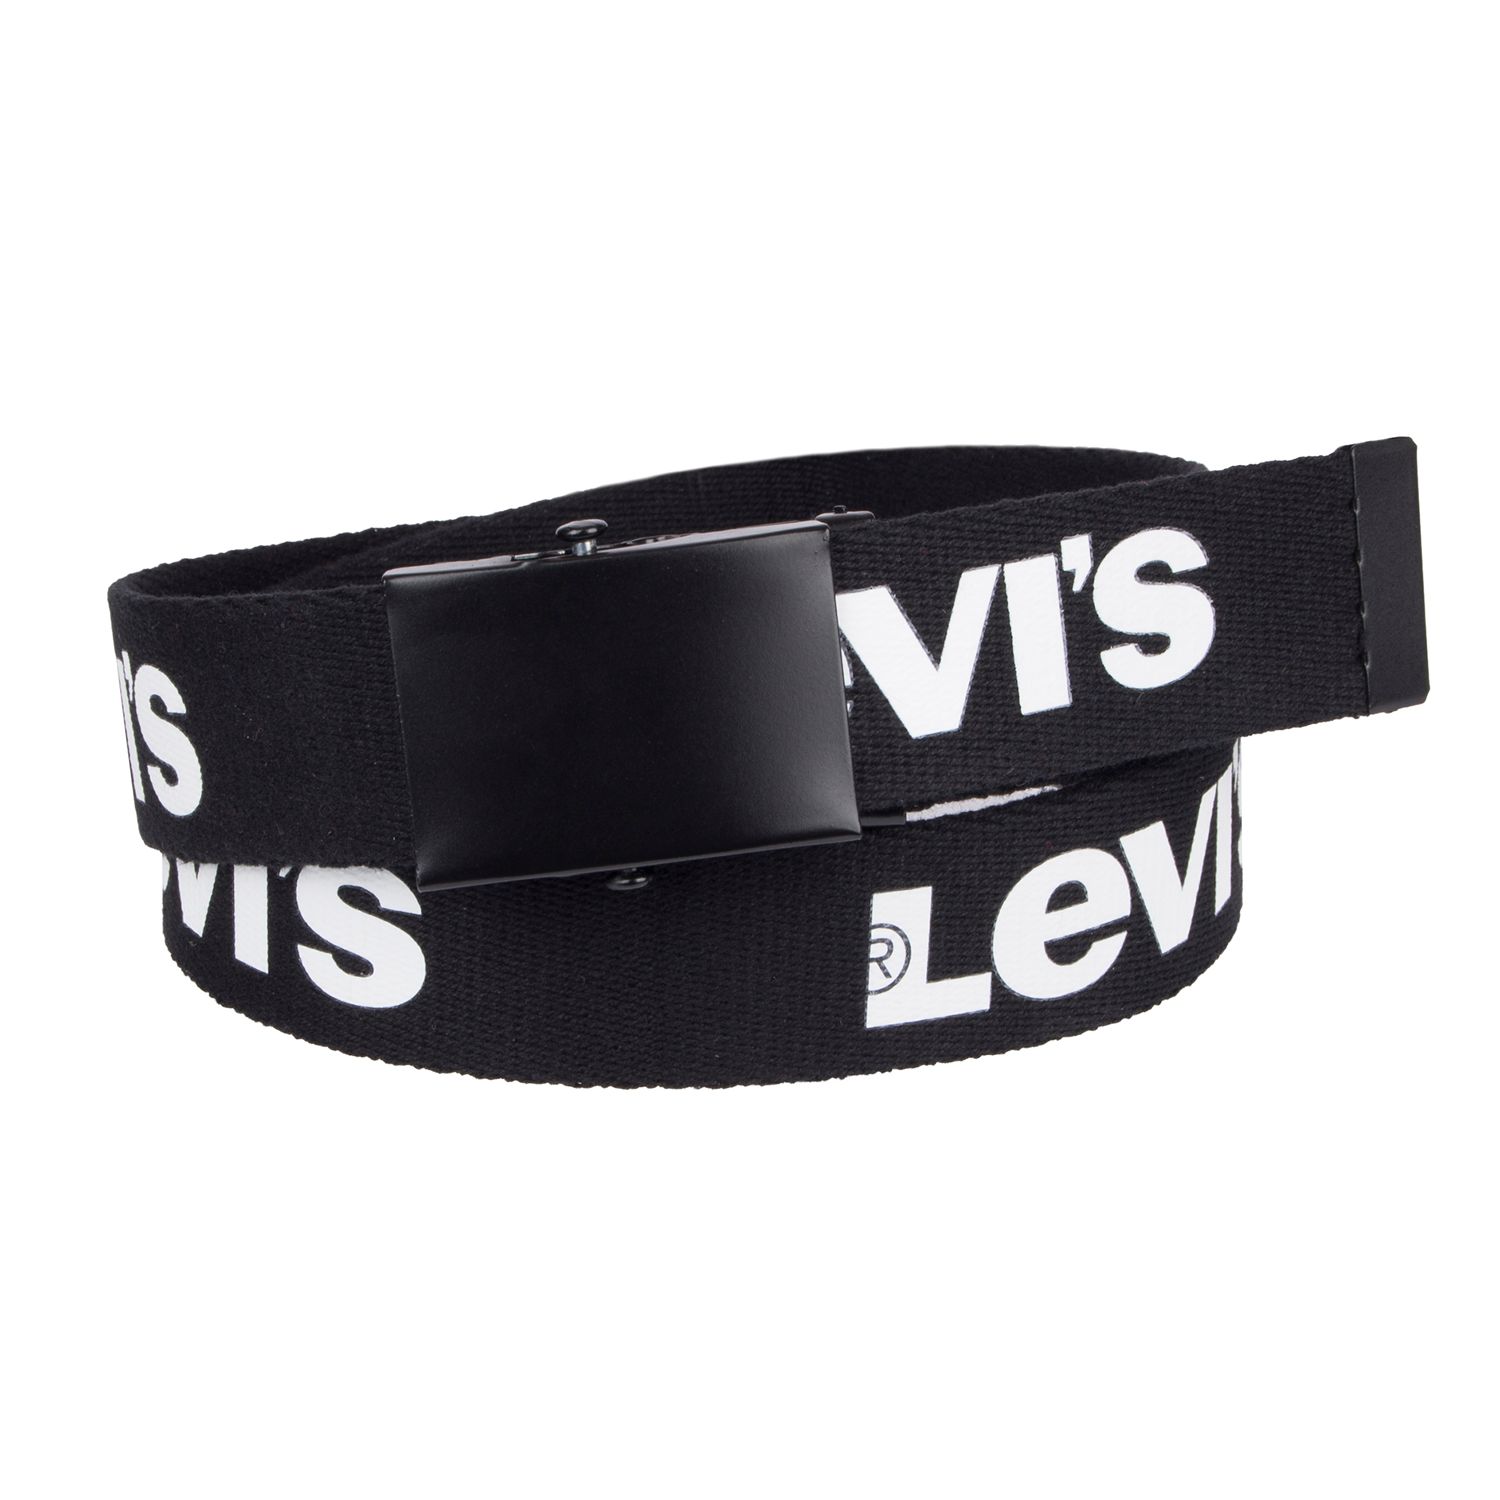 levis cut to fit belt